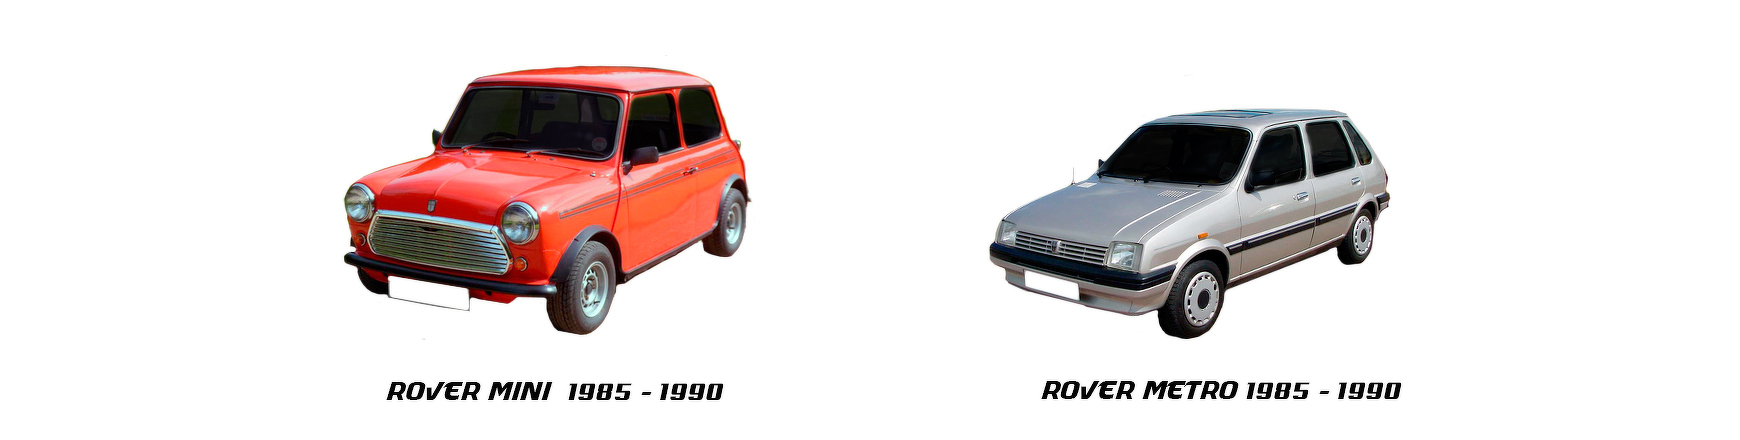 Piezas y Recambios de Rover Austin Mini Metro de 1985 a 1990 | Veramauto.es